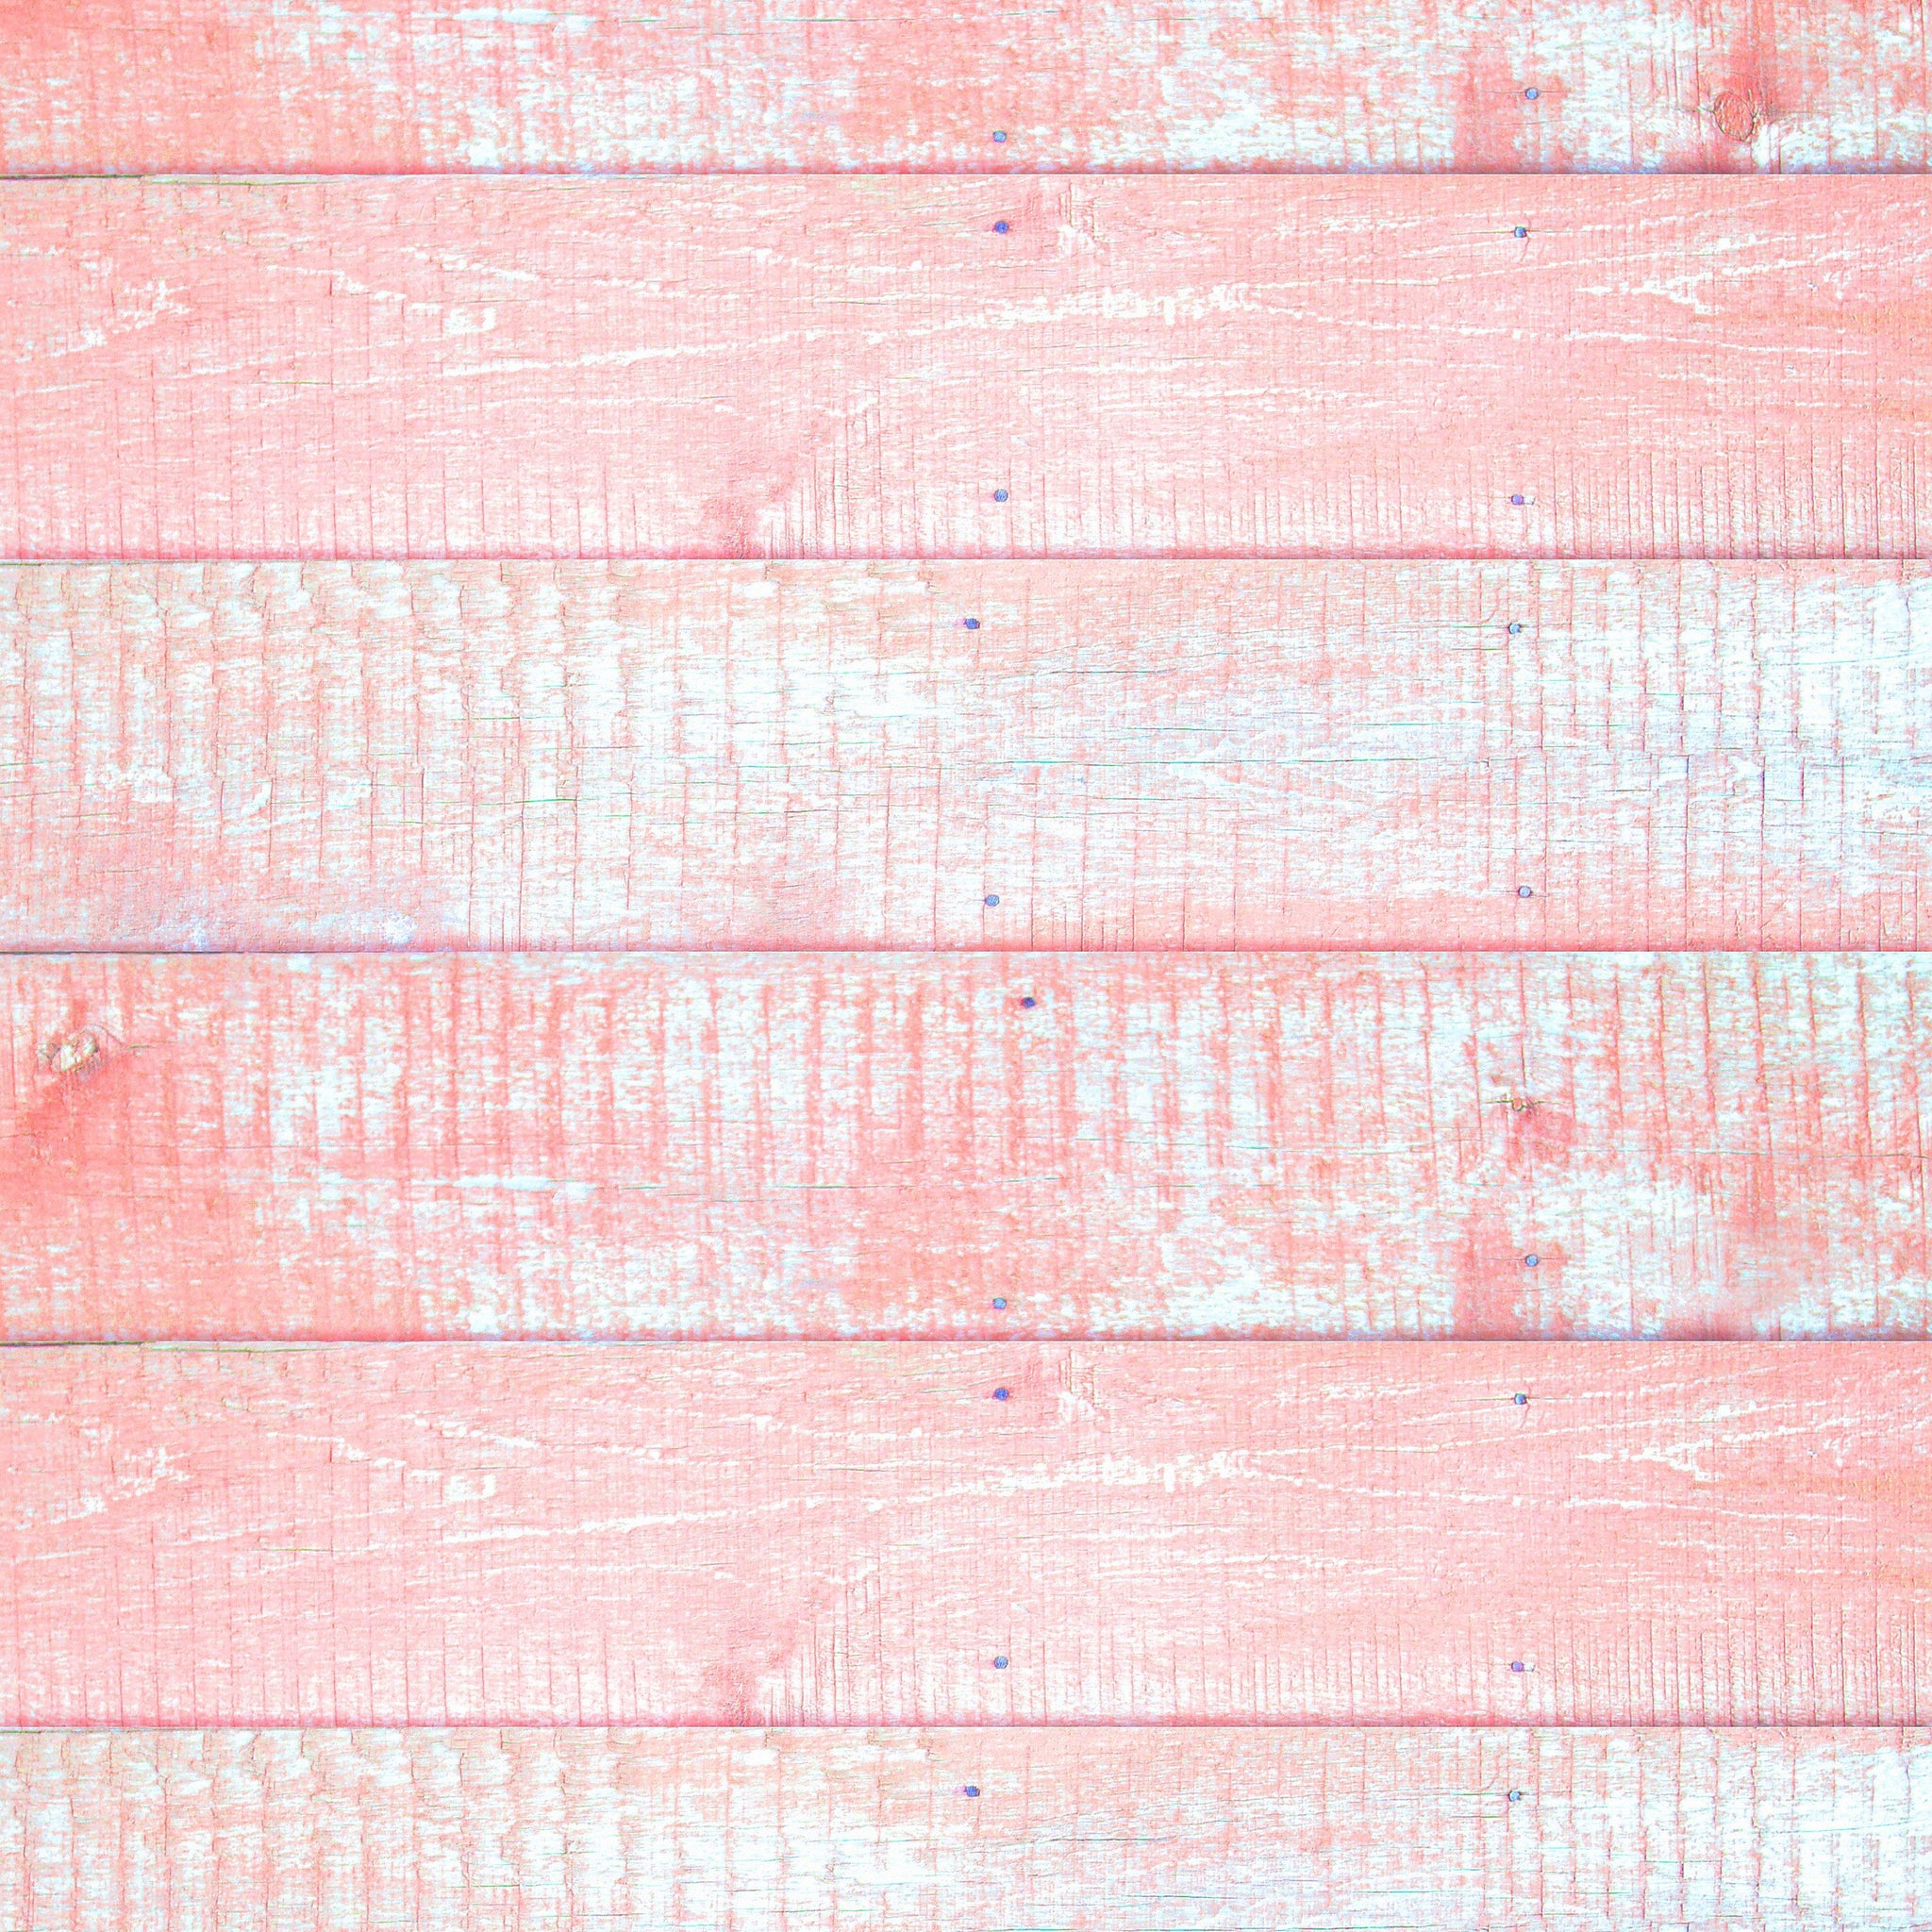 Distressed Pink Wood